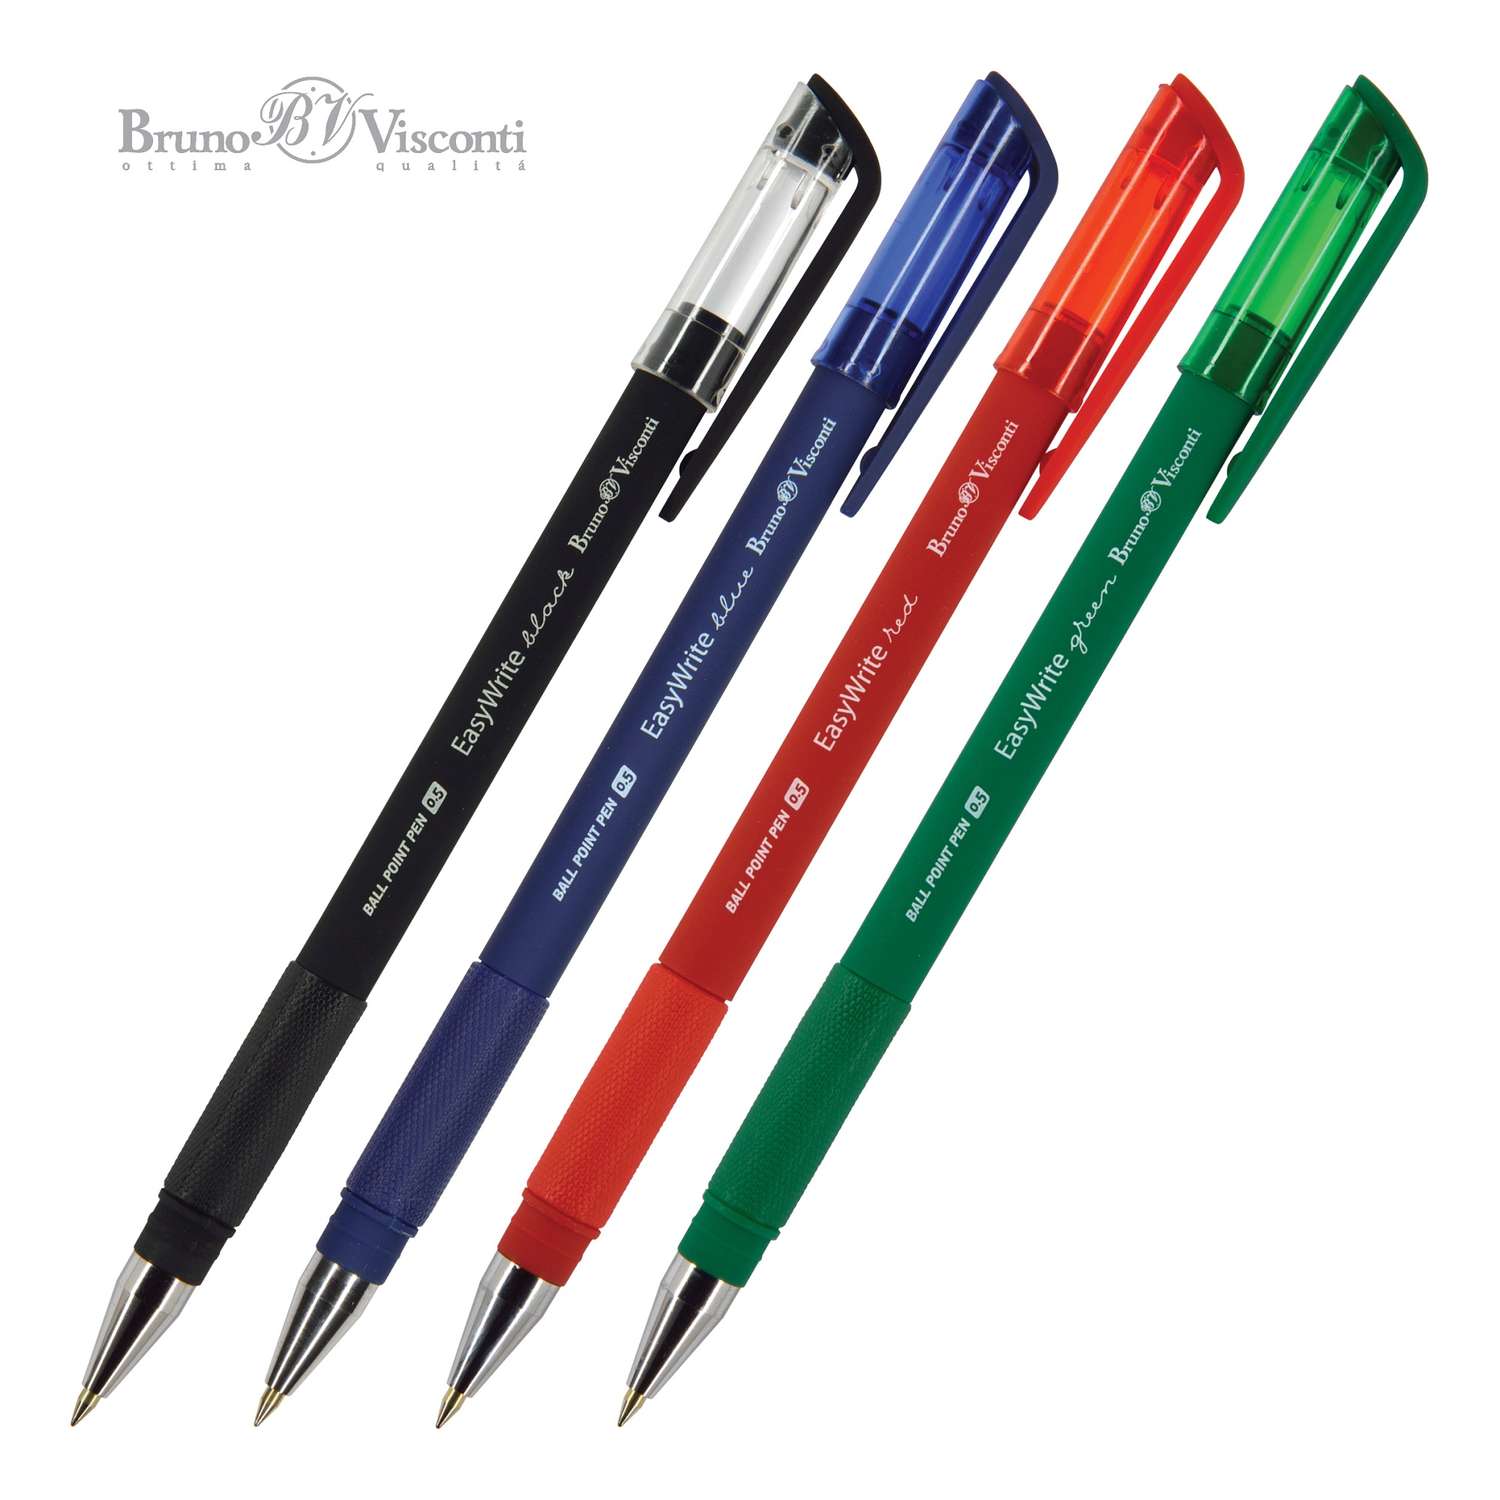 Сине зеленые ручка. Ручка шар Bruno Visconti Neon. Ручка Ballpoint Pen 0.5 easy write. Bruno Visconti FINWRITE набор 4 ручки. Ручка Visconti зеленая.